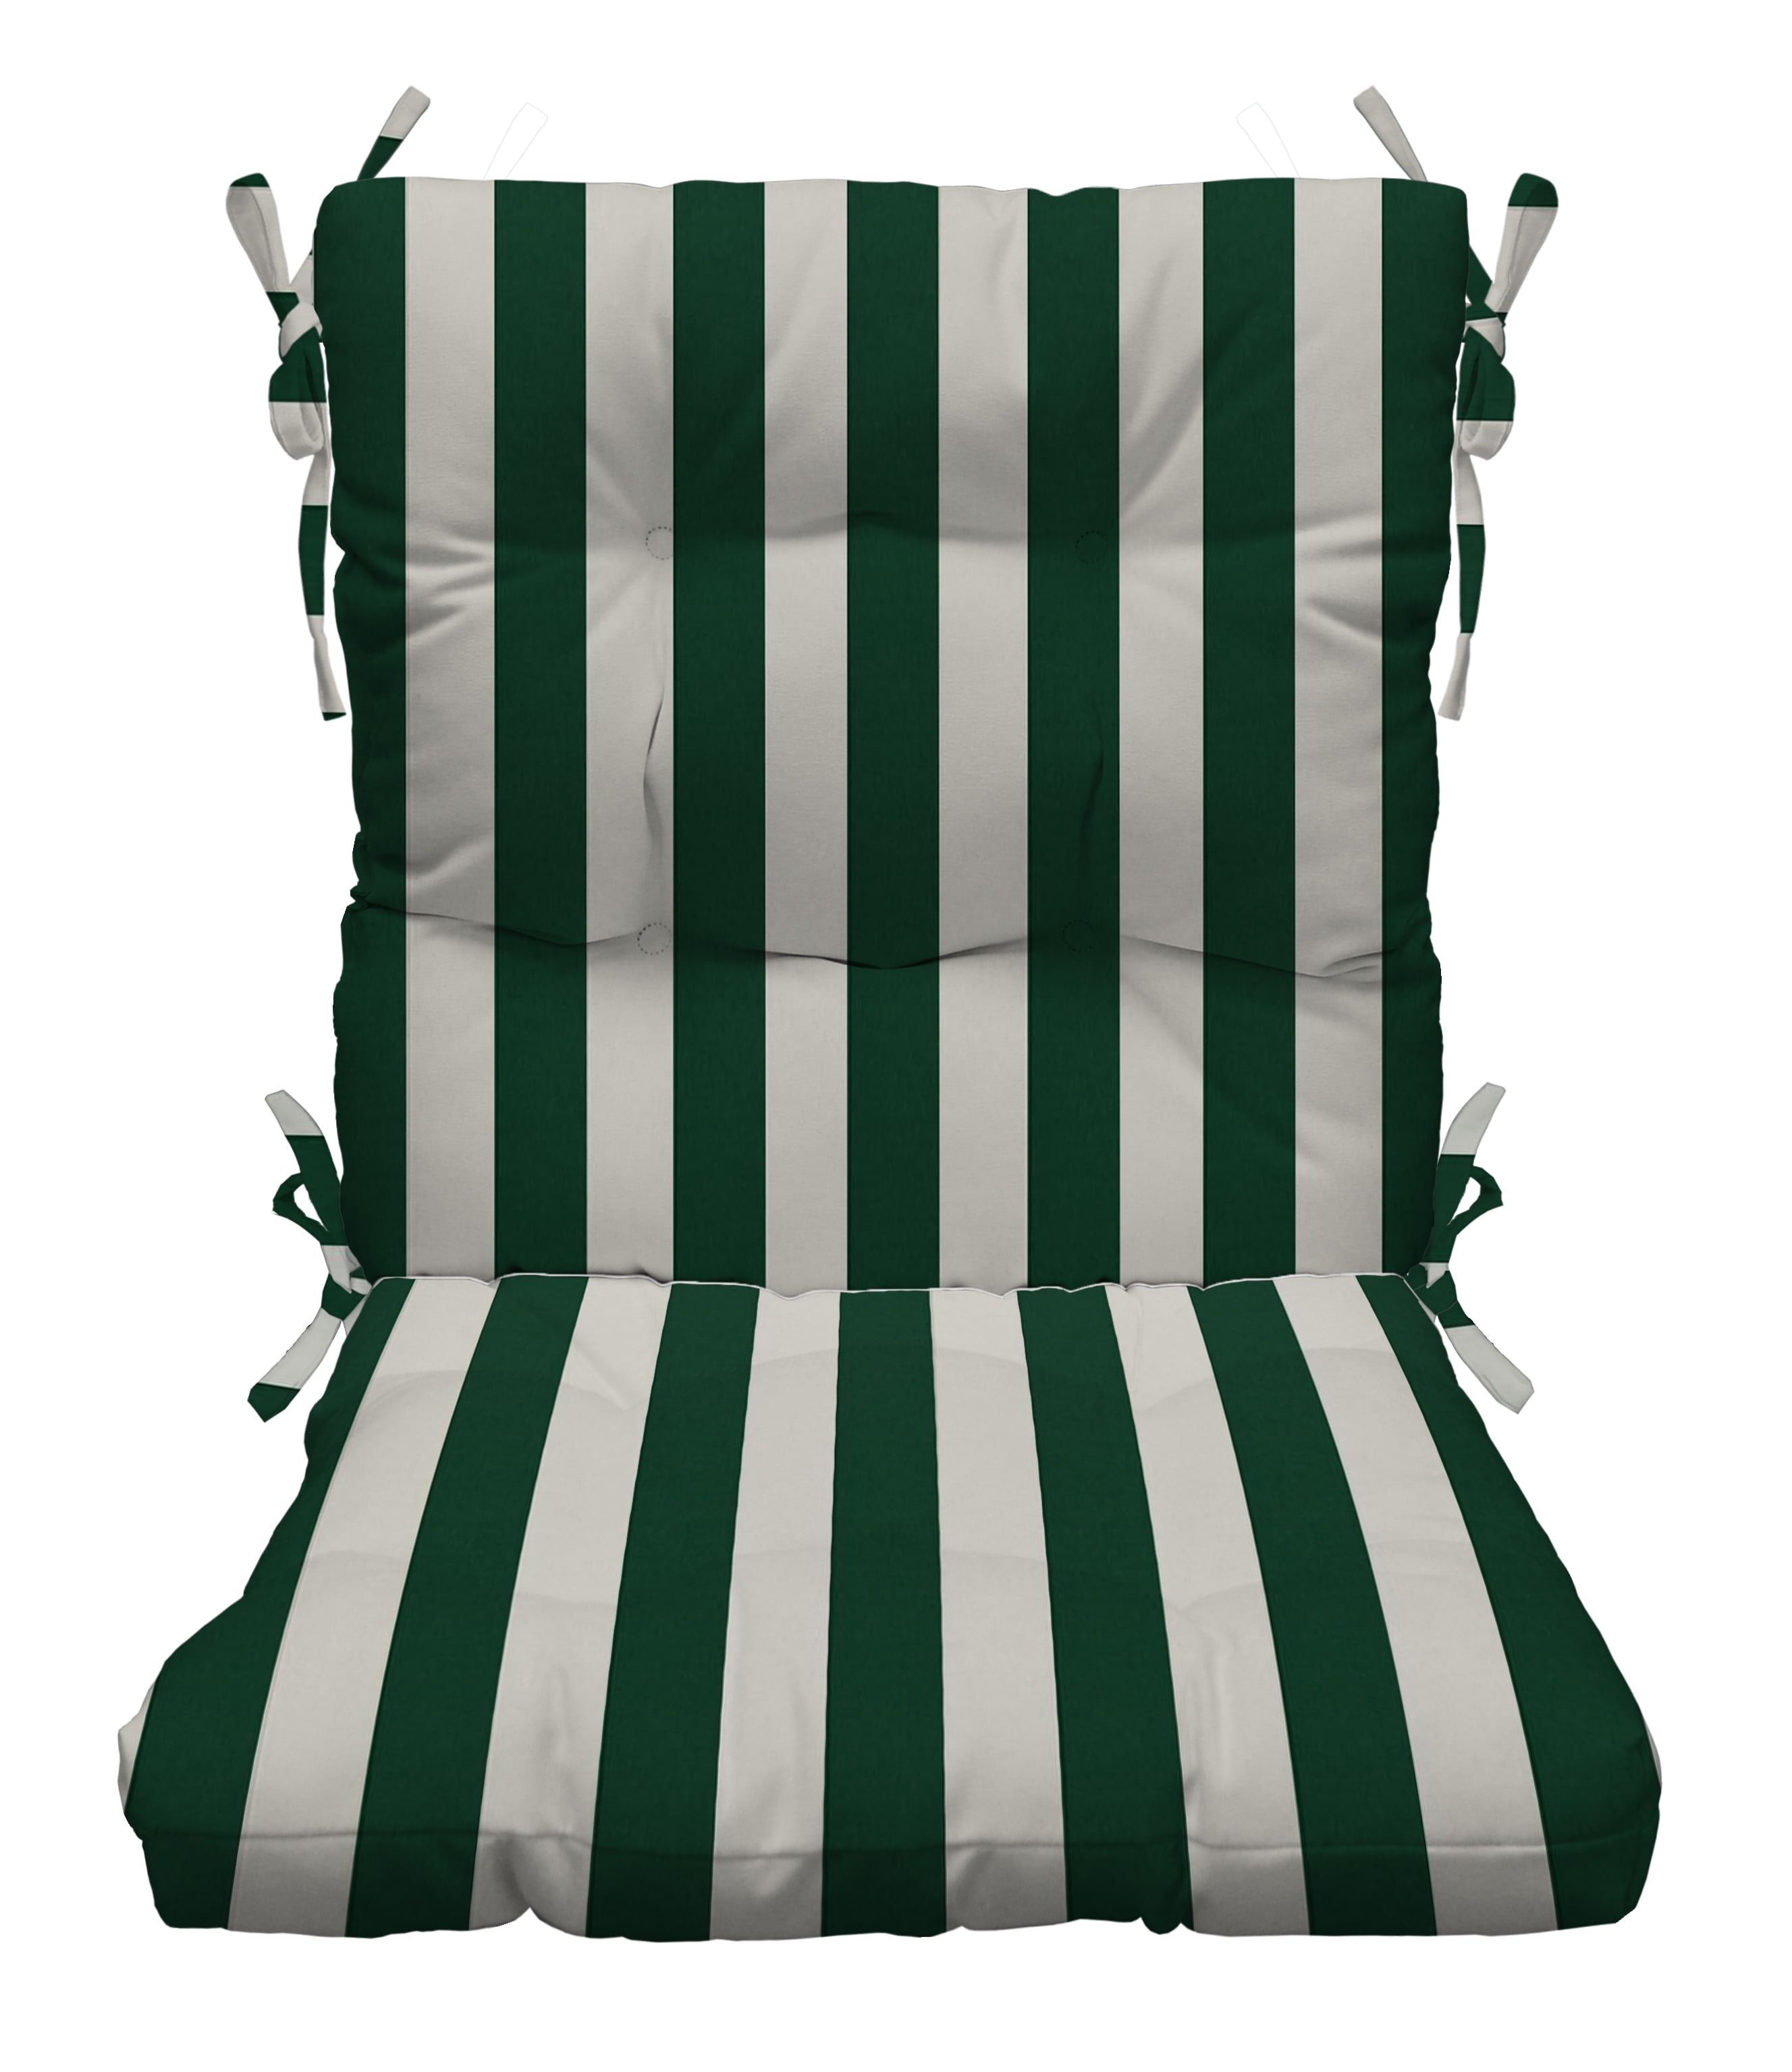 hunter green chair cushions